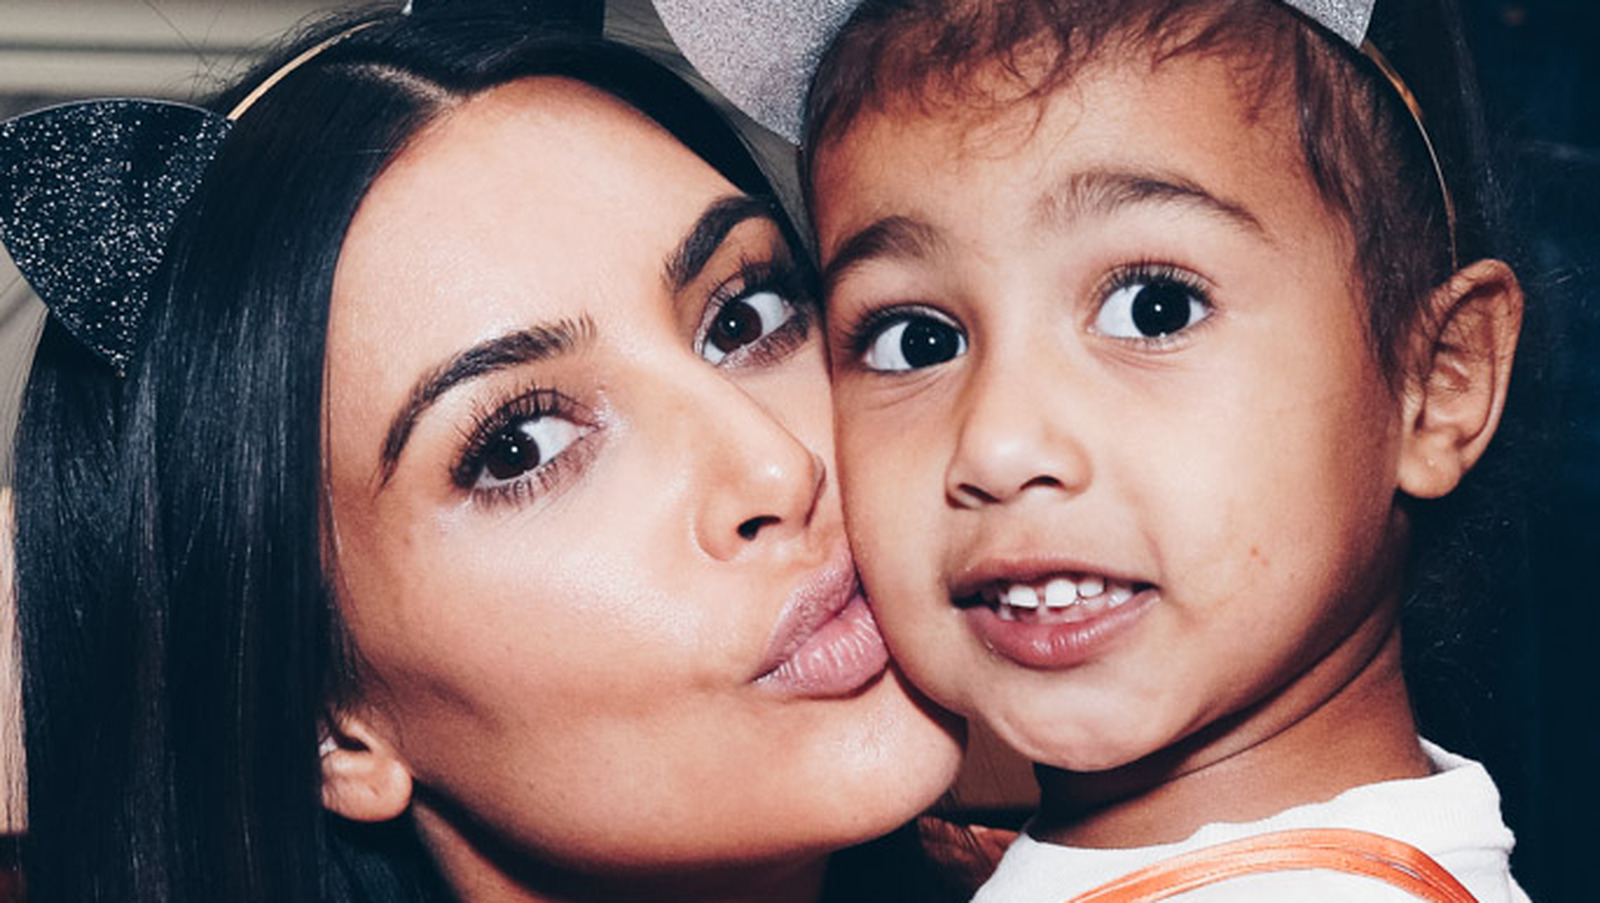 Kim Kardashian Carries Baby Mason In A Bag (PHOTO)